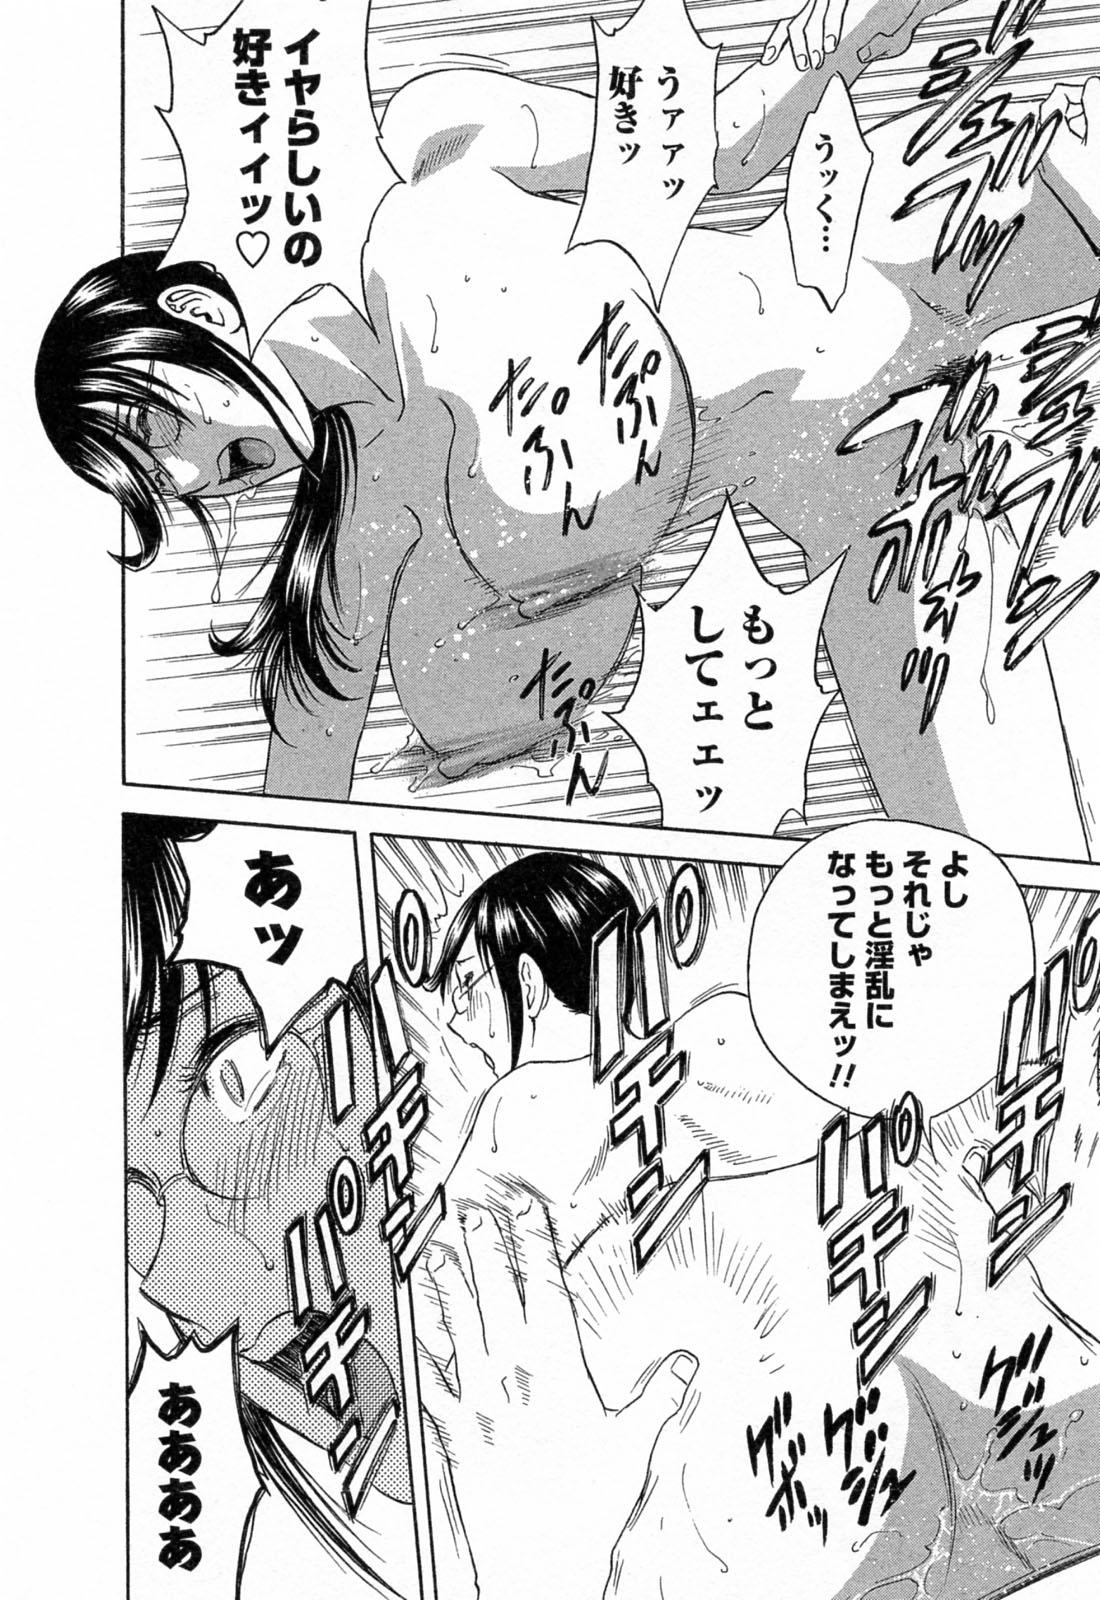 [Hidemaru] Mo-Retsu! Boin Sensei (Boing Boing Teacher) Vol.4 151